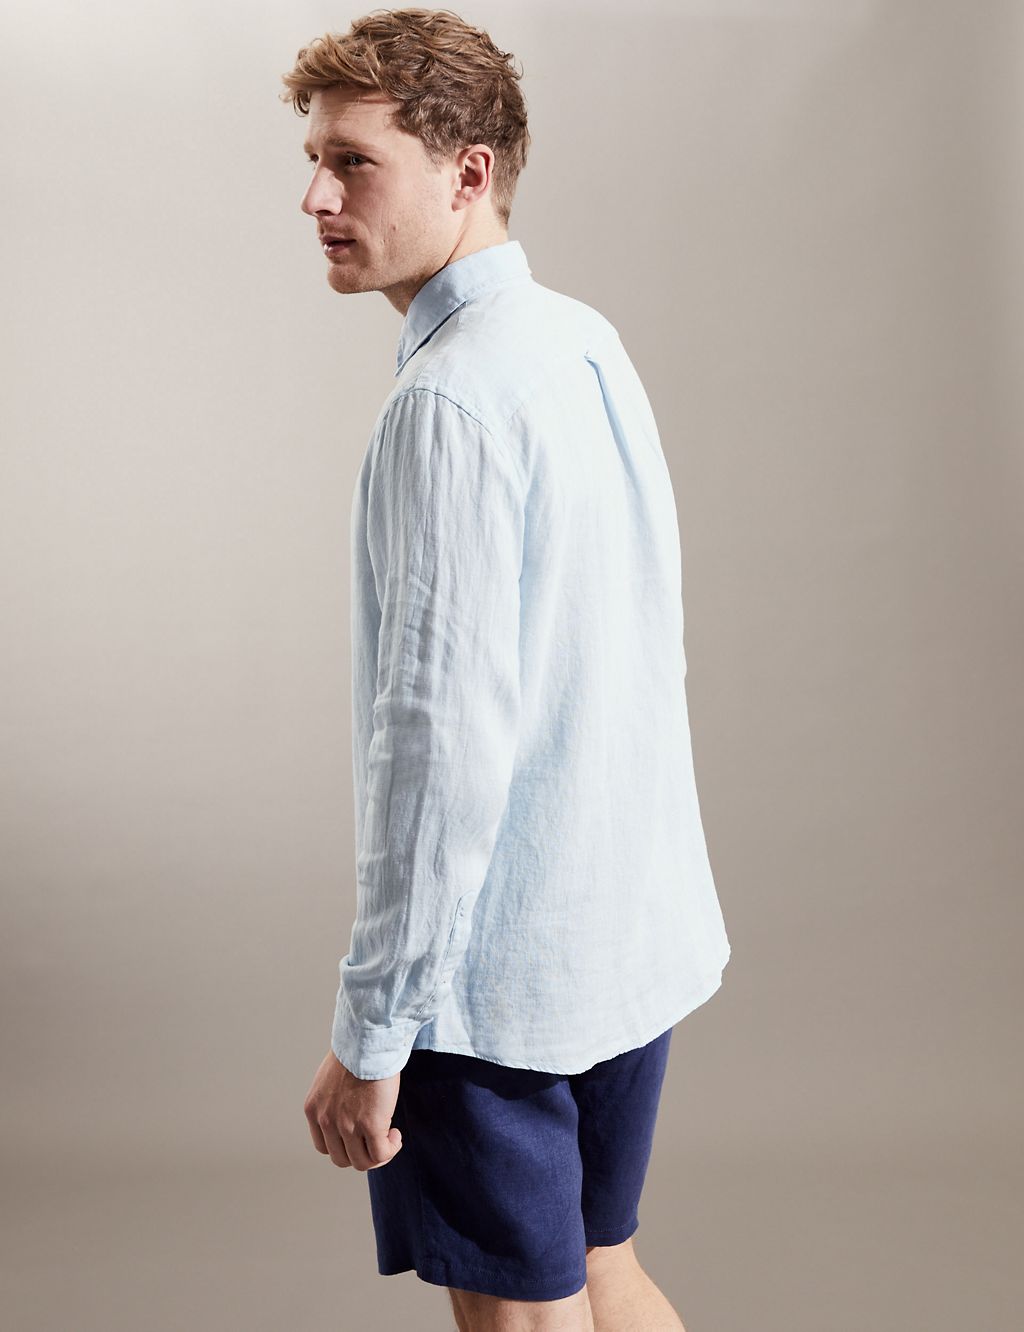 Luxurious Pure Linen Long Sleeve Shirt 4 of 7